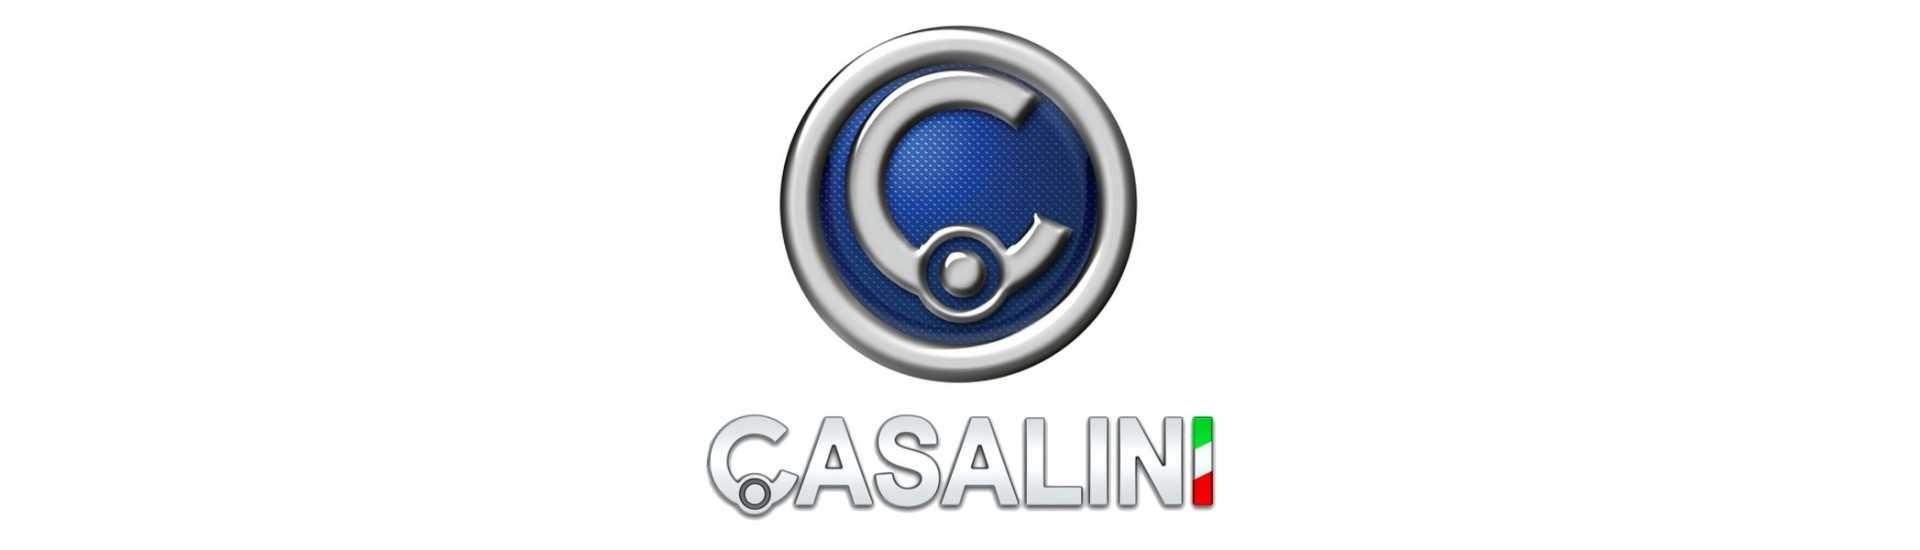 Sensor de rotación al mejor precio para coche sin permiso Casalini